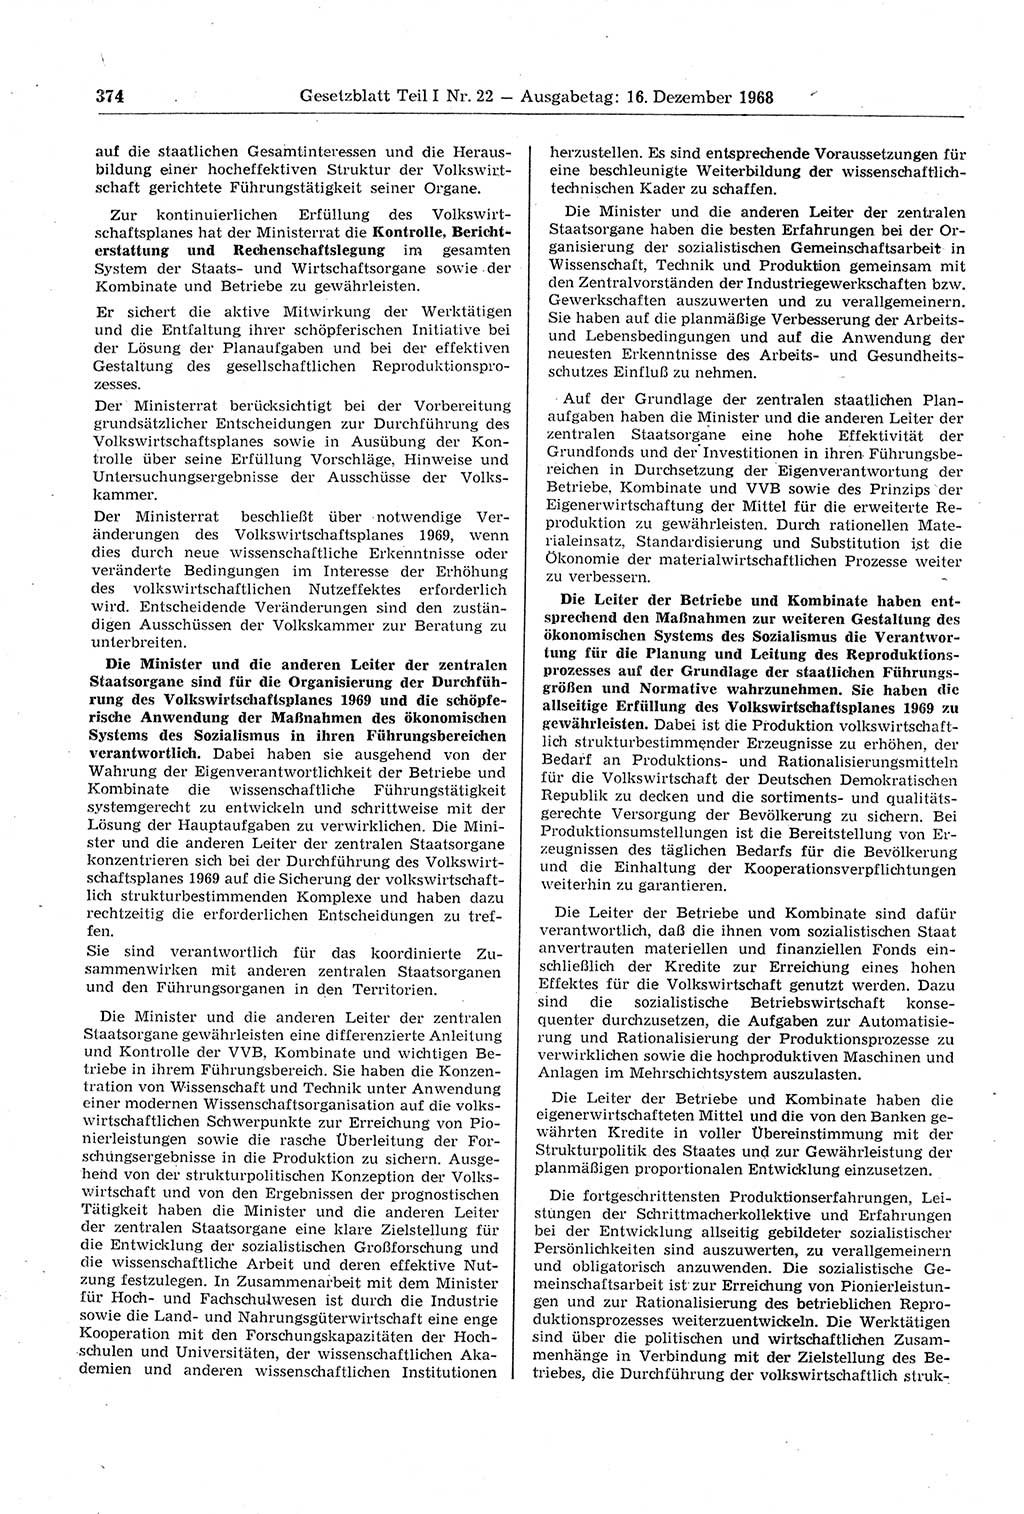 Gesetzblatt (GBl.) der Deutschen Demokratischen Republik (DDR) Teil Ⅰ 1968, Seite 374 (GBl. DDR Ⅰ 1968, S. 374)